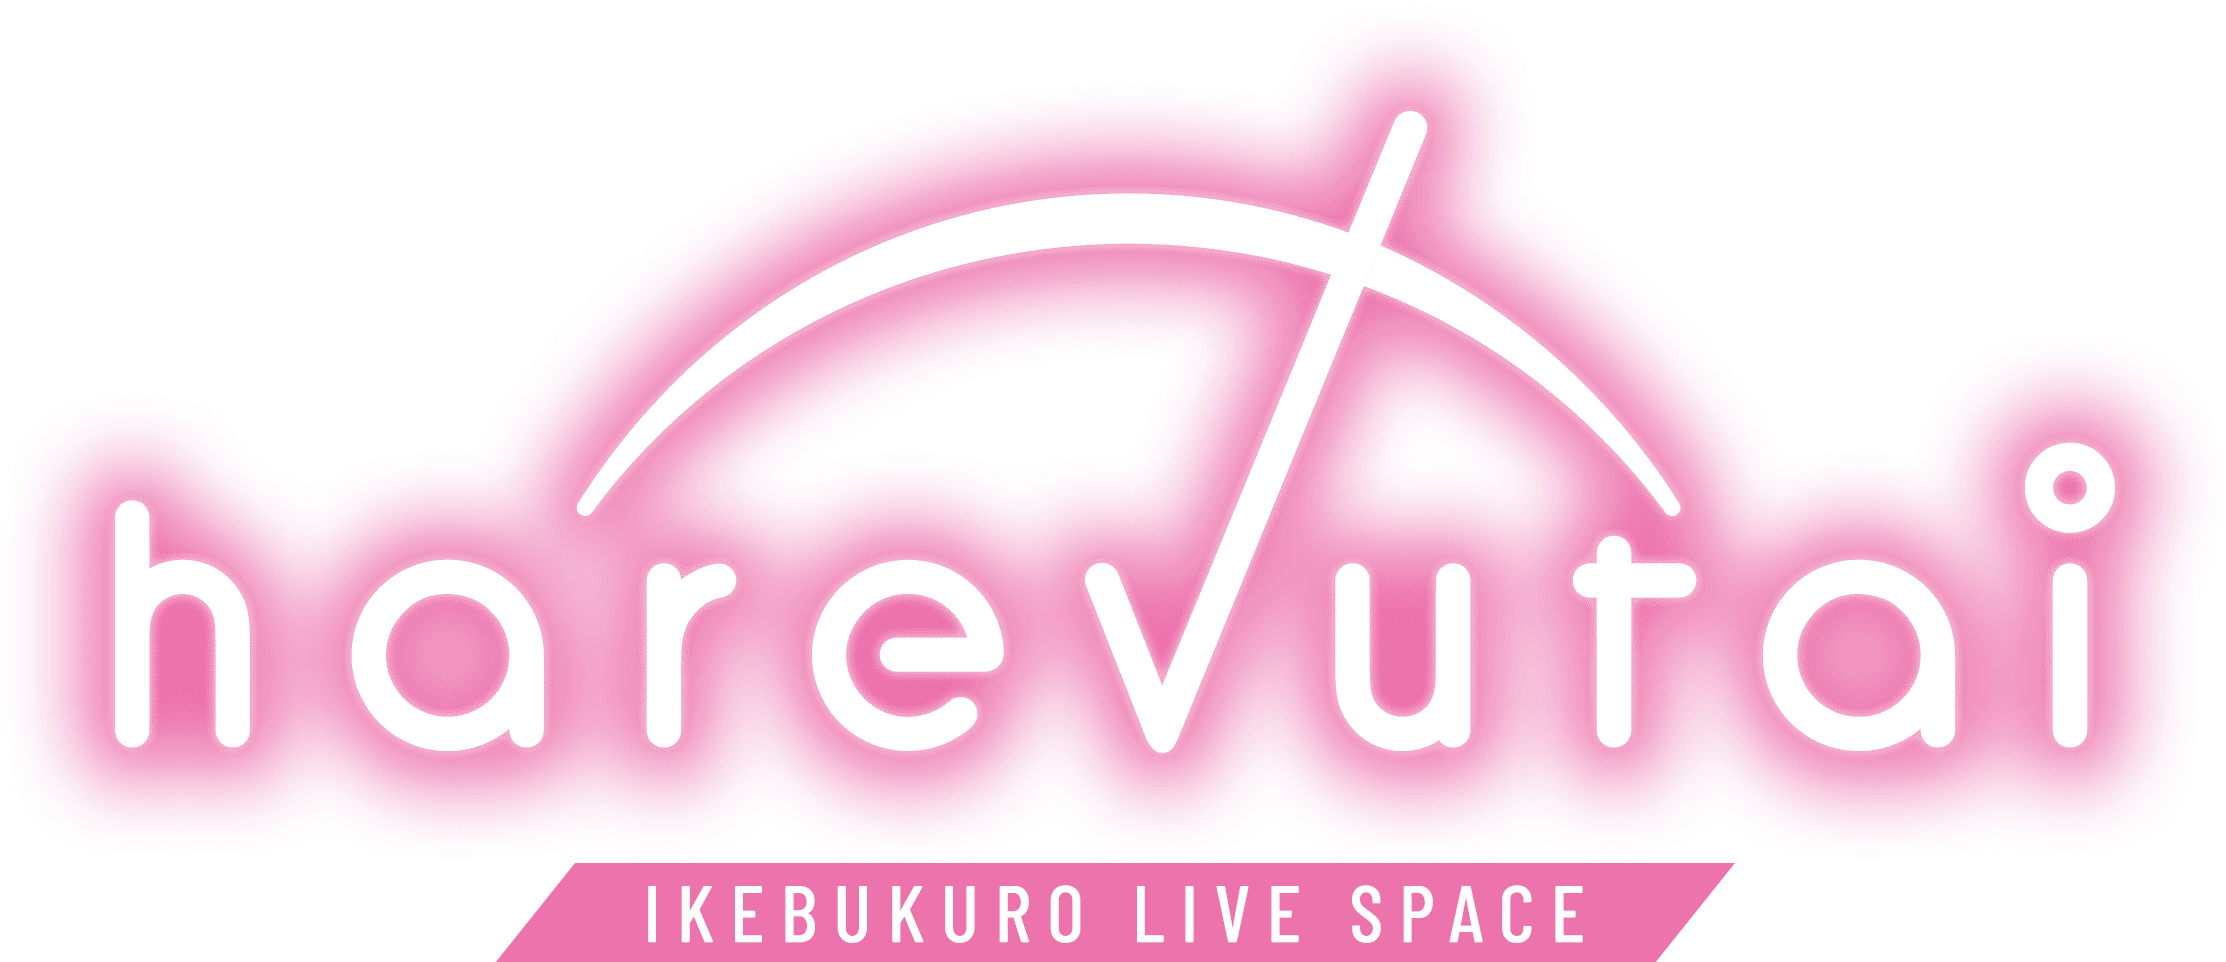 未来型ライブ劇場 “harevutai” オフィシャル -IKEBUKURO LIVE SPACE